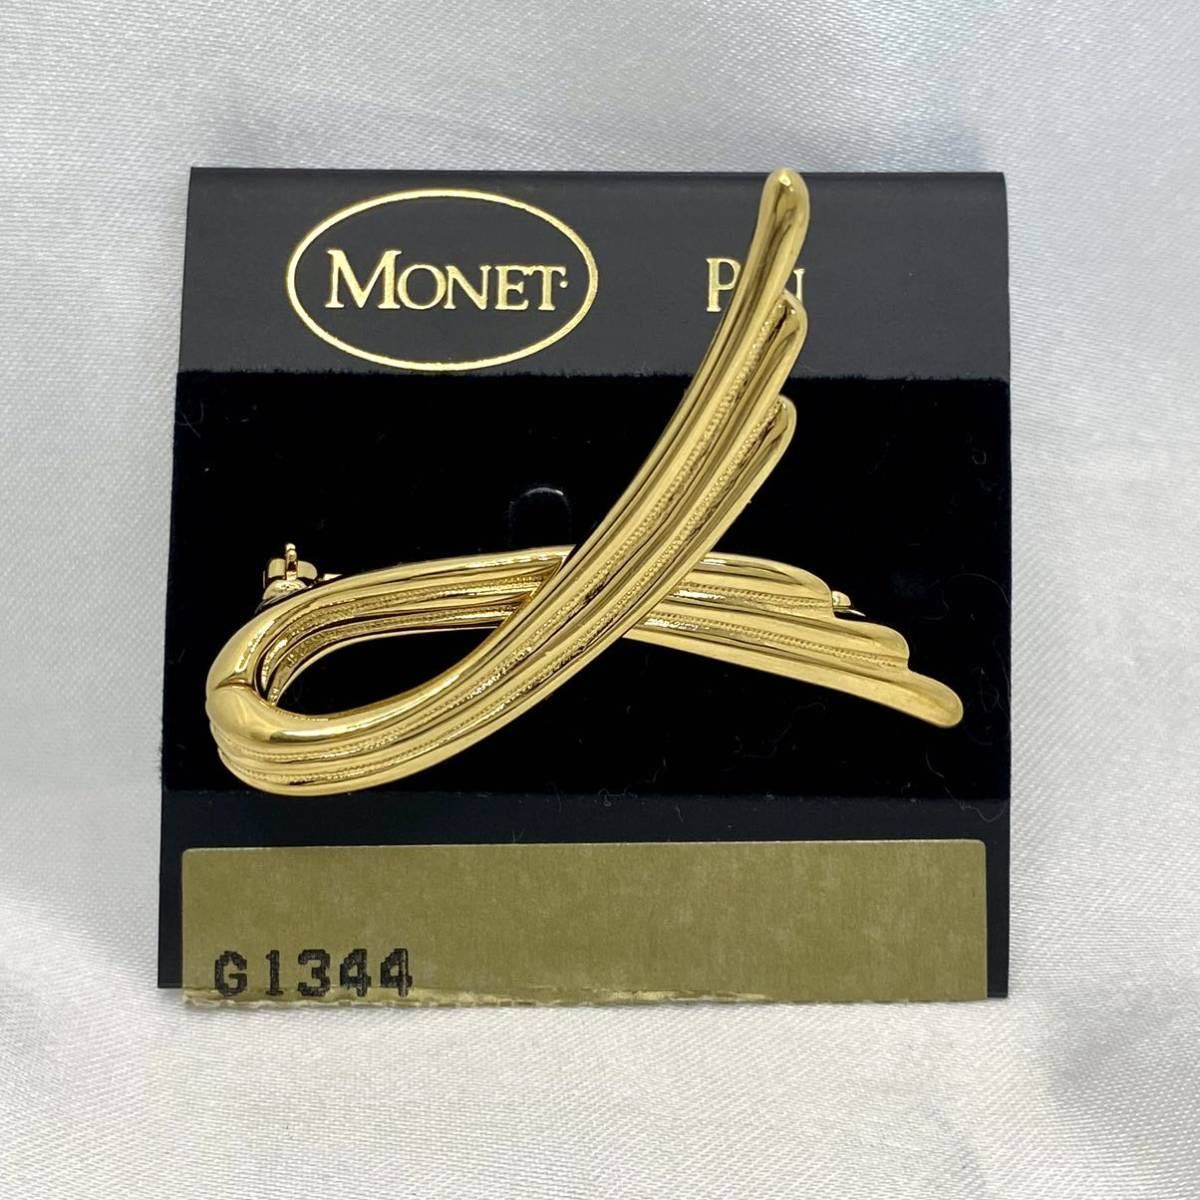 Monet モネ ブローチ リボン モチーフ ゴールドカラー ヴィンテージ ビンテージ vintage アンティーク アクセサリー MONET 未使用品